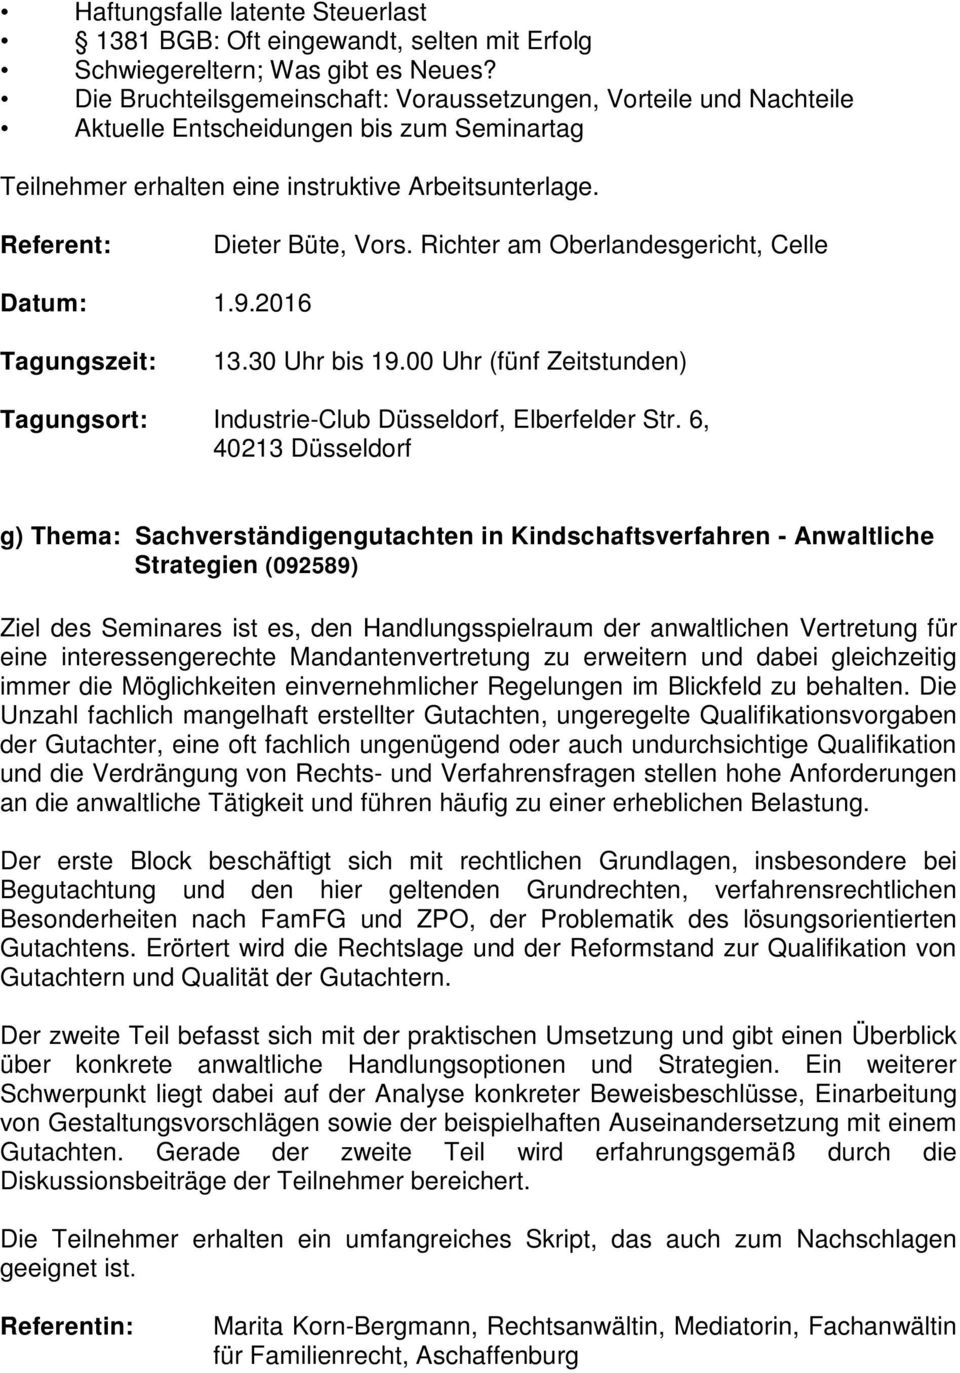 Richter am Oberlandesgericht, Celle Datum: 1.9.2016 Industrie-Club Düsseldorf, Elberfelder Str.